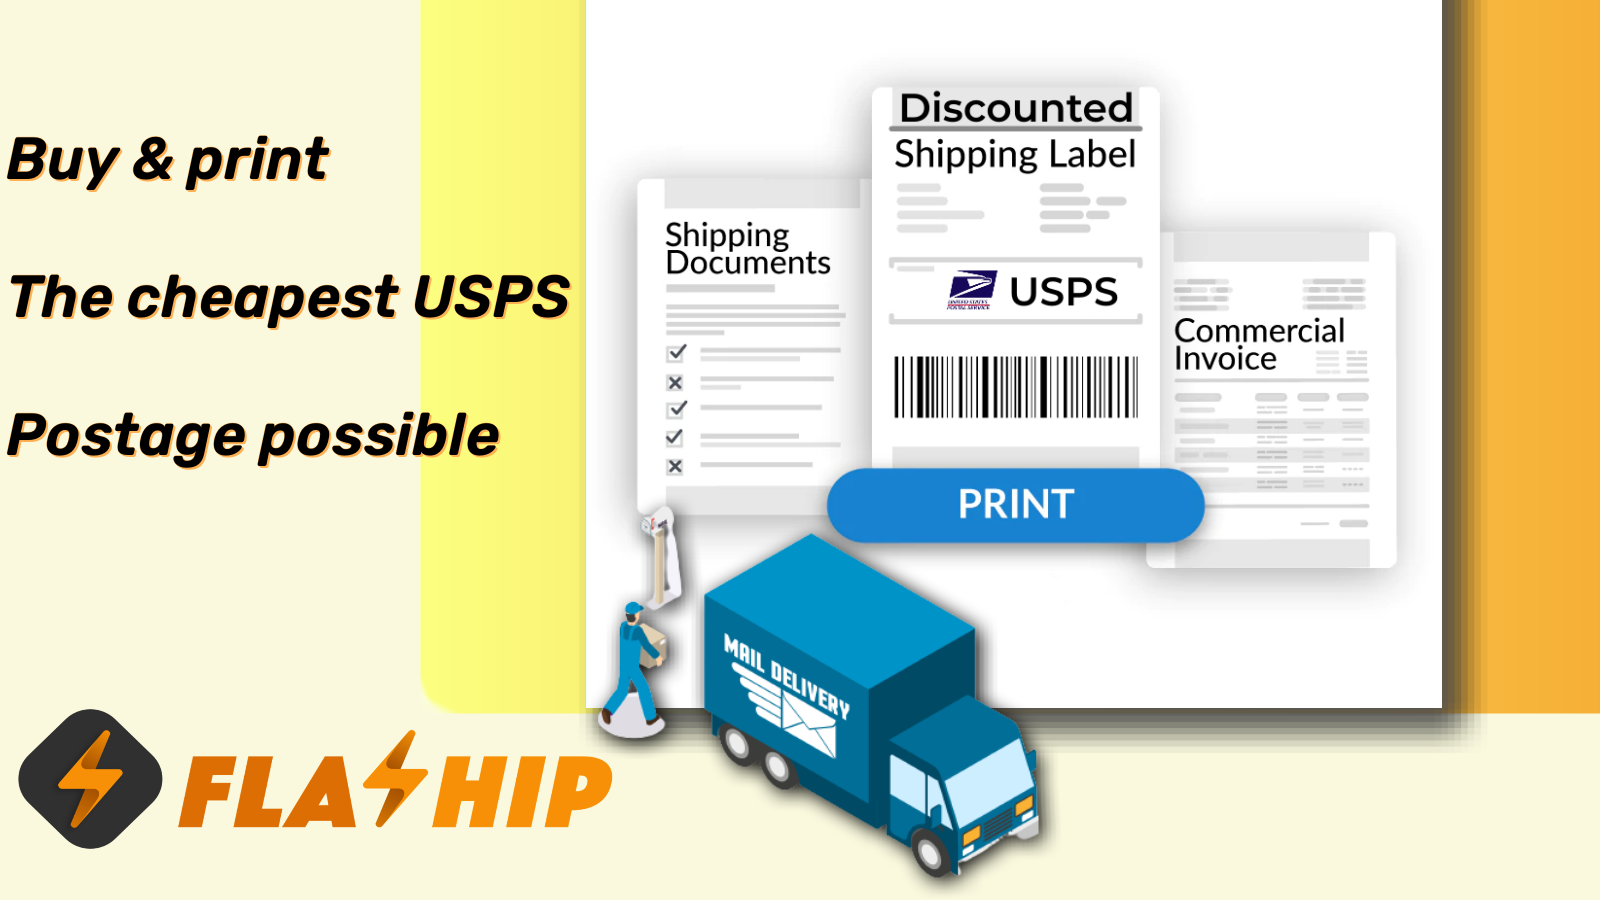 Køb & print den billigste USPS-porto muligt.